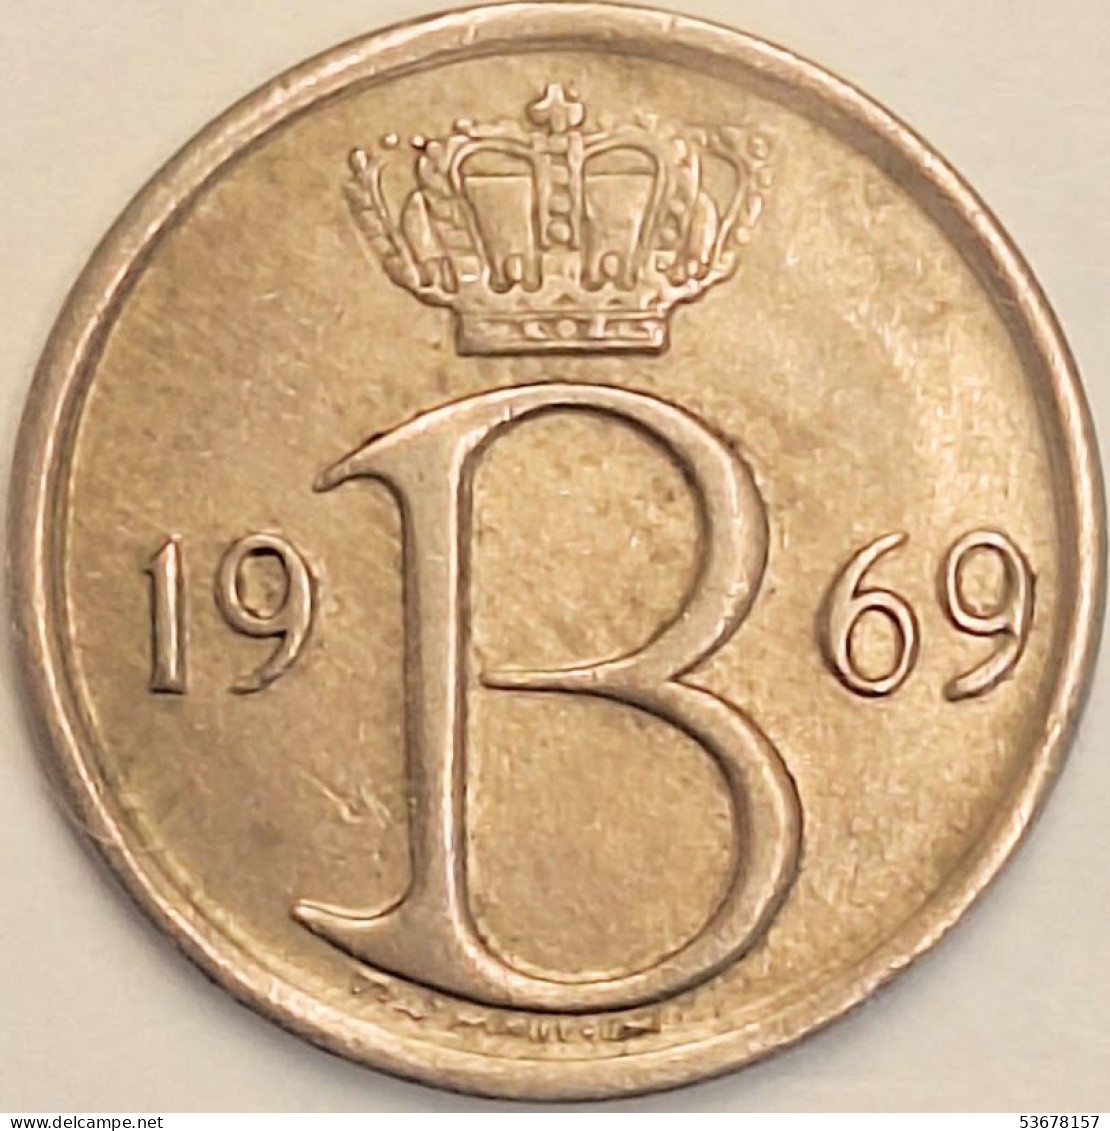 Belgium - 25 Centimes 1969, KM# 154.1 (#3085) - 25 Cent